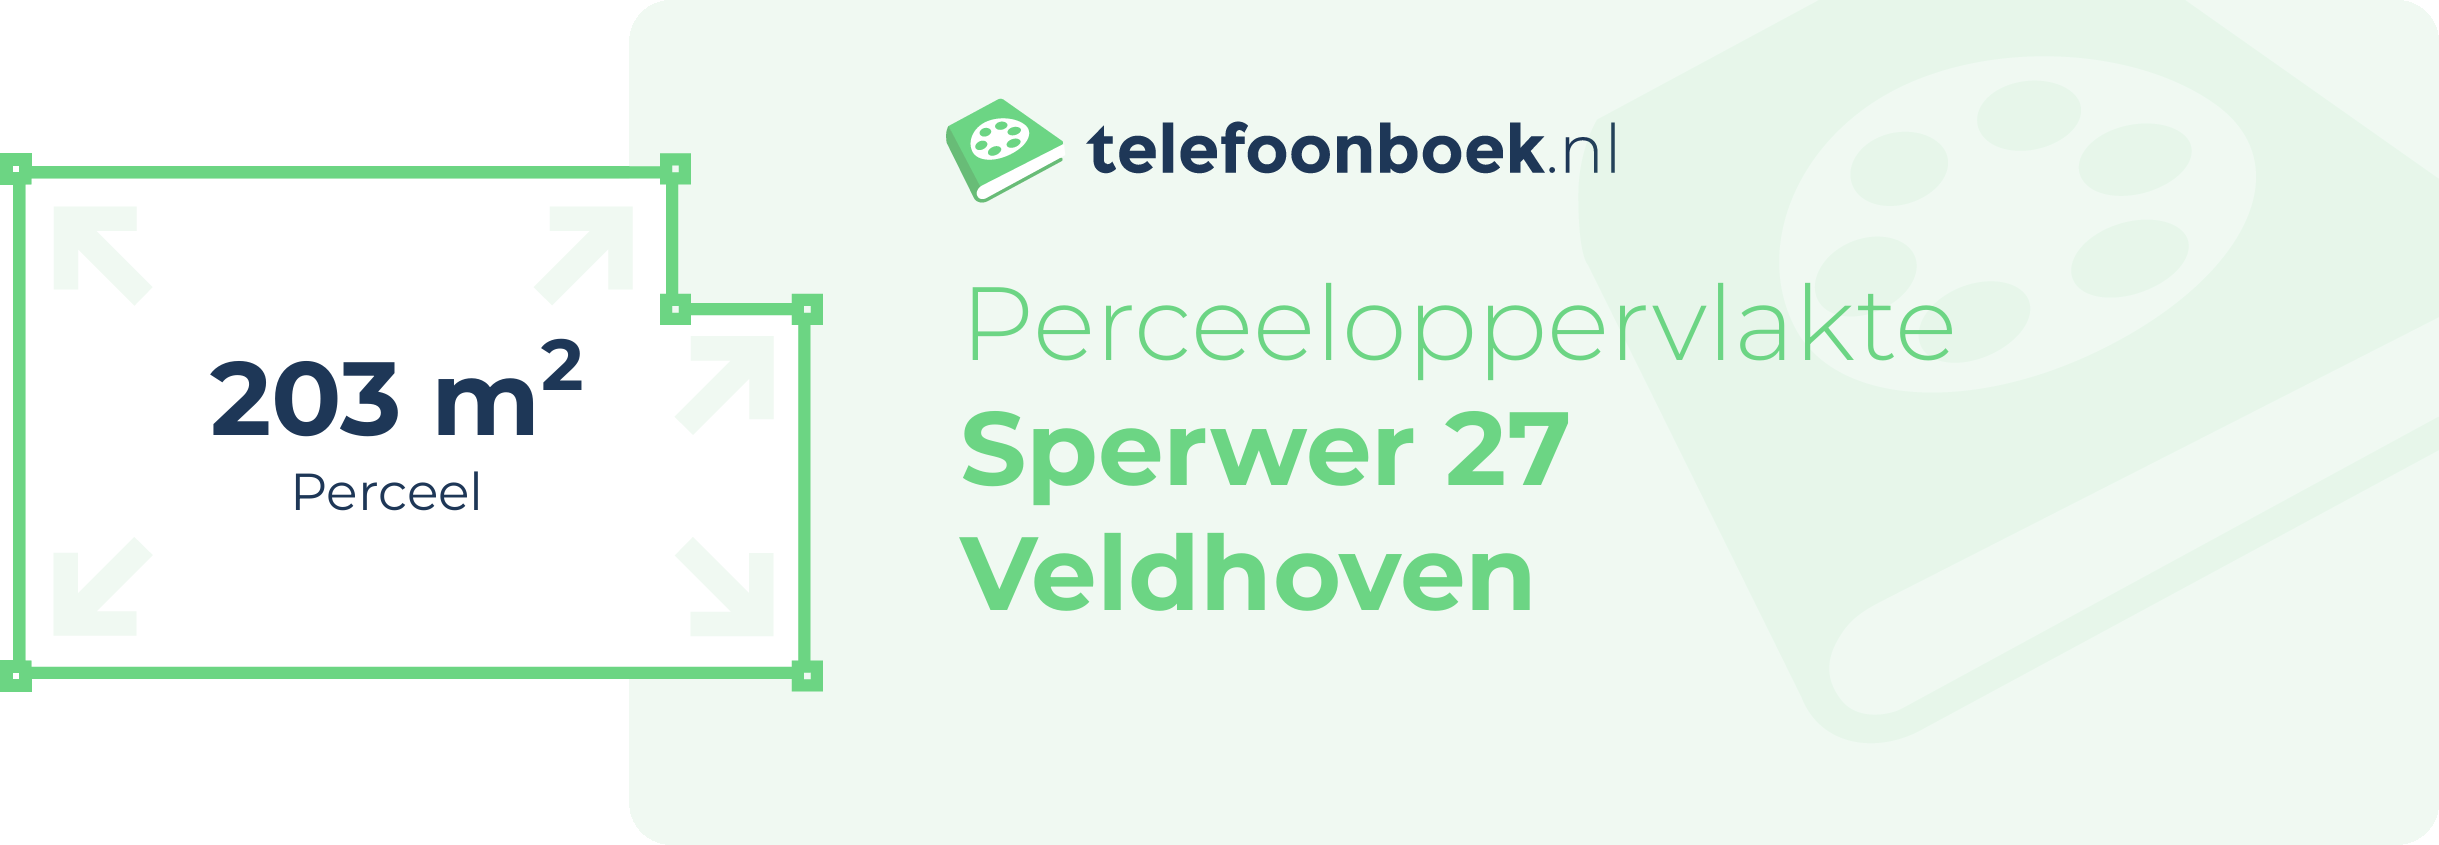 Perceeloppervlakte Sperwer 27 Veldhoven